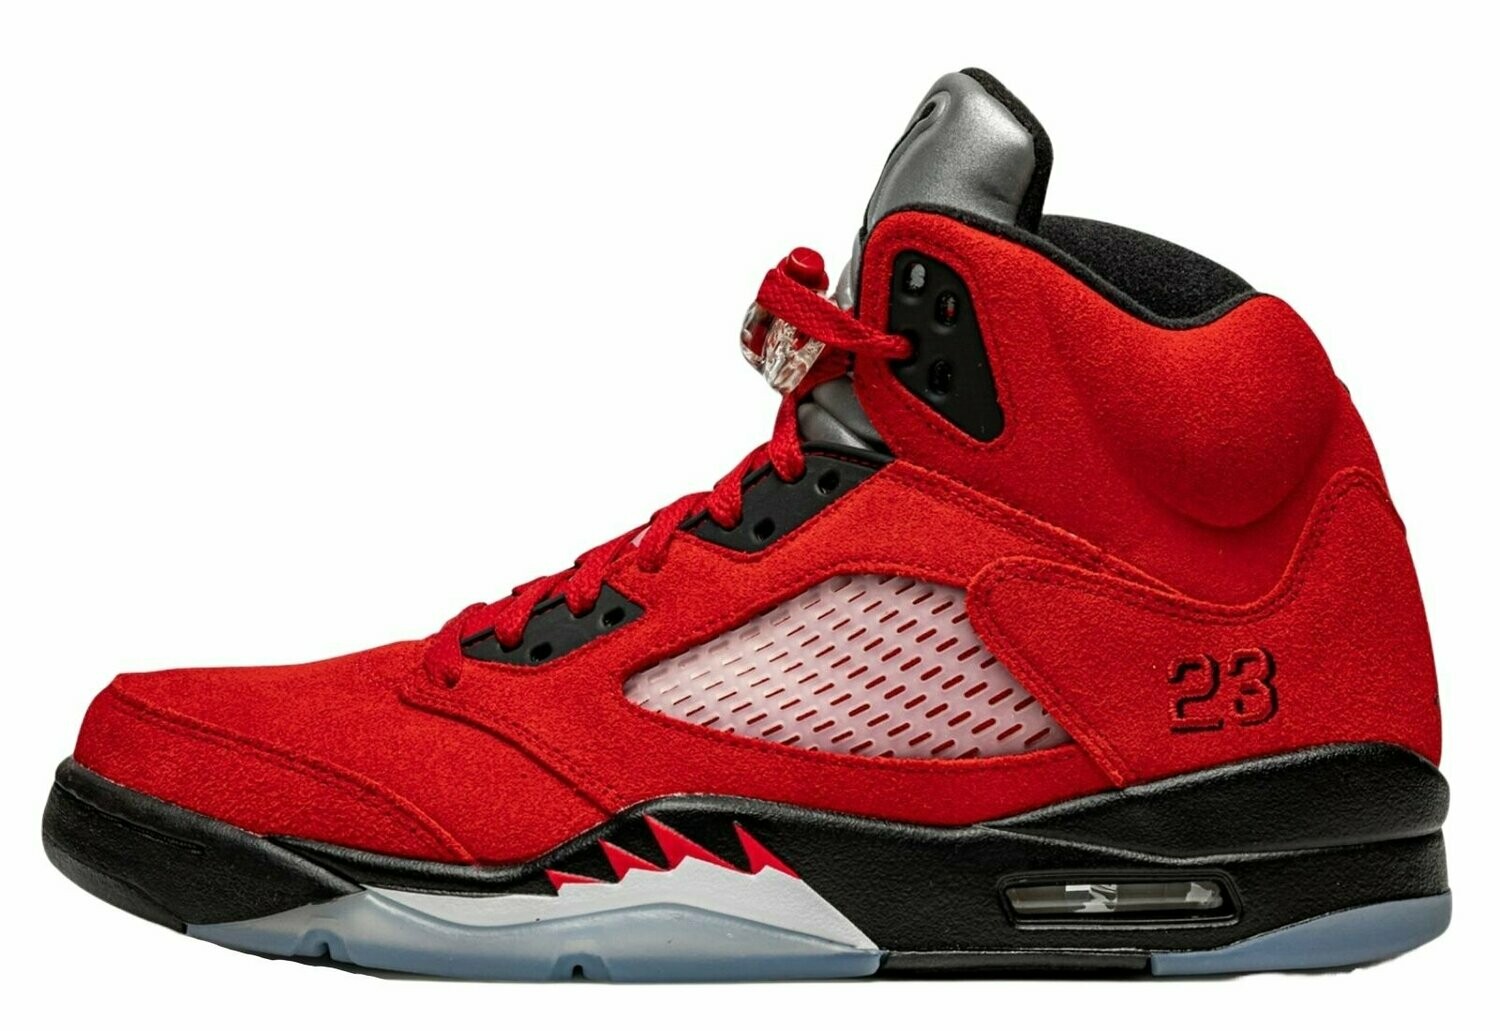 Air Jordan SE The"